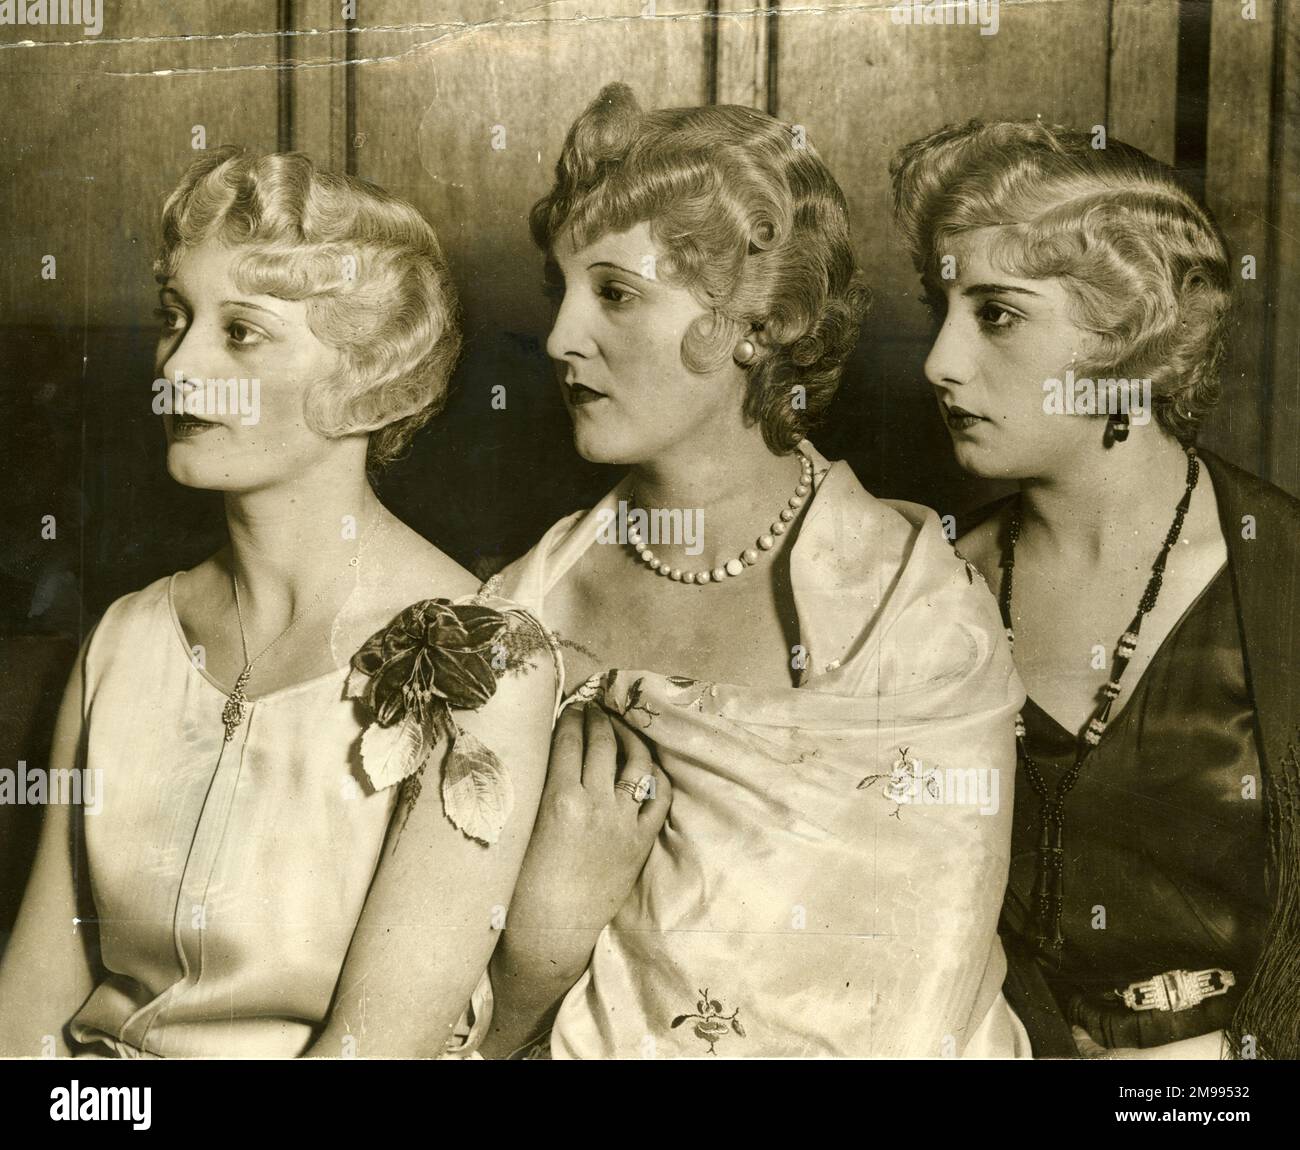 Cheveux bouclés dans des charlottes typiques de 1930. Banque D'Images